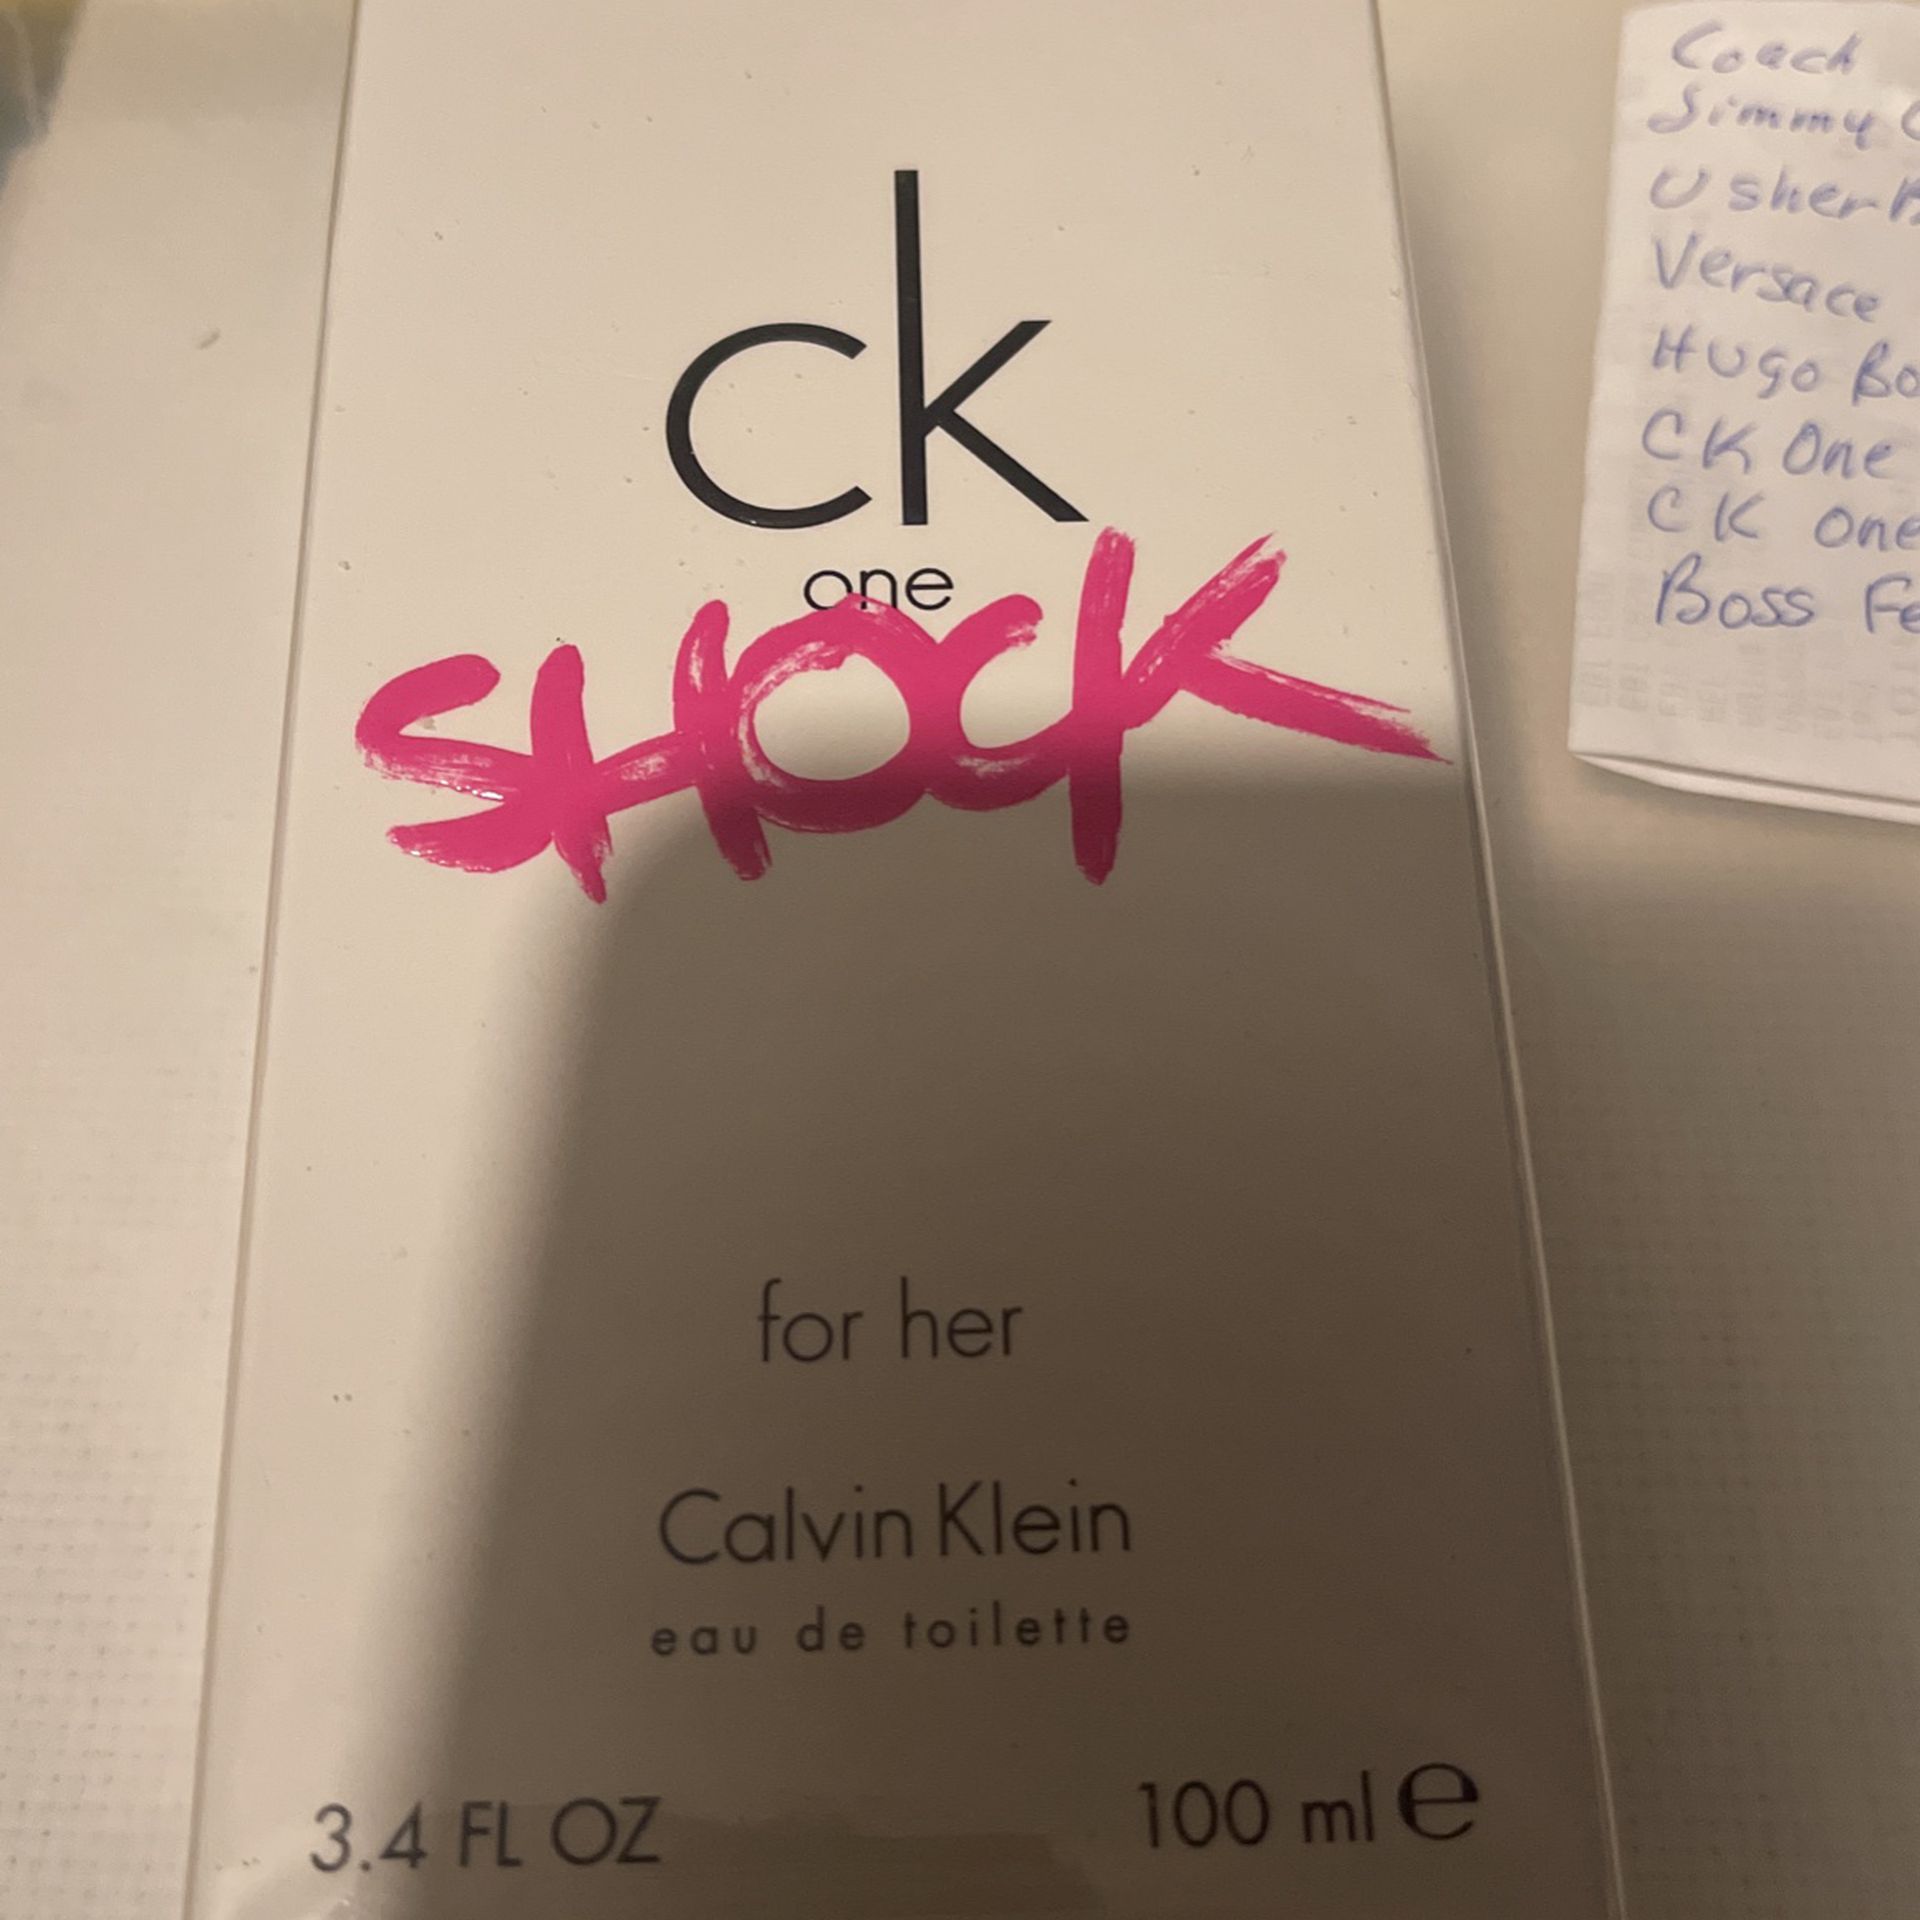 Calvin Klein For Her 3.4 FL OZ One Shock 